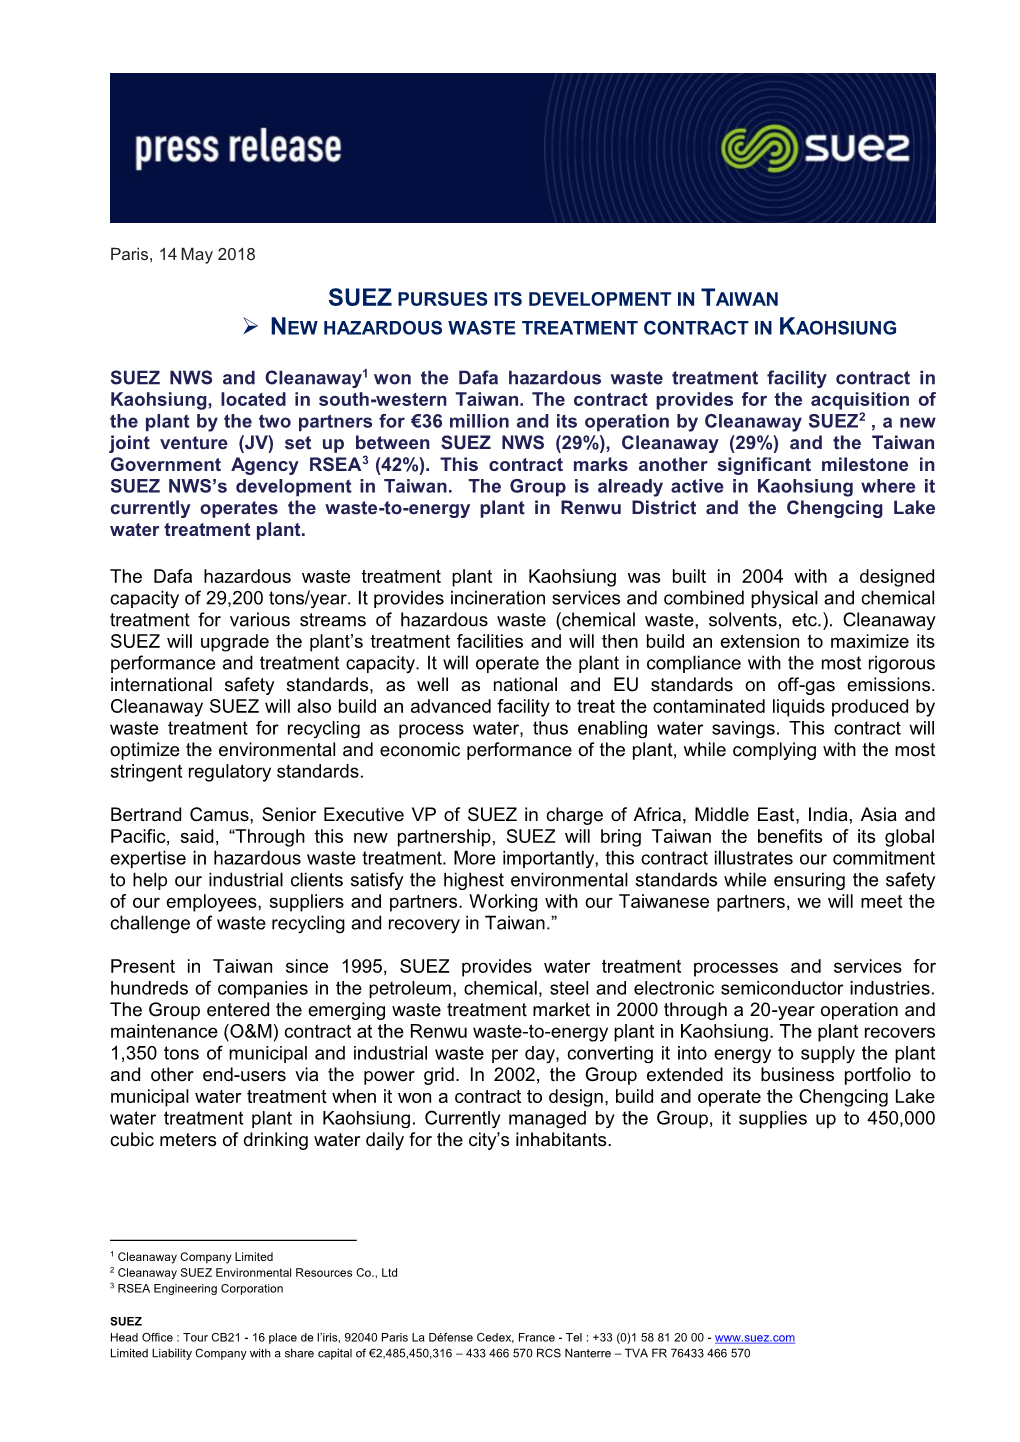 Suez Pursues Its Development in Taiwan New Hazardous